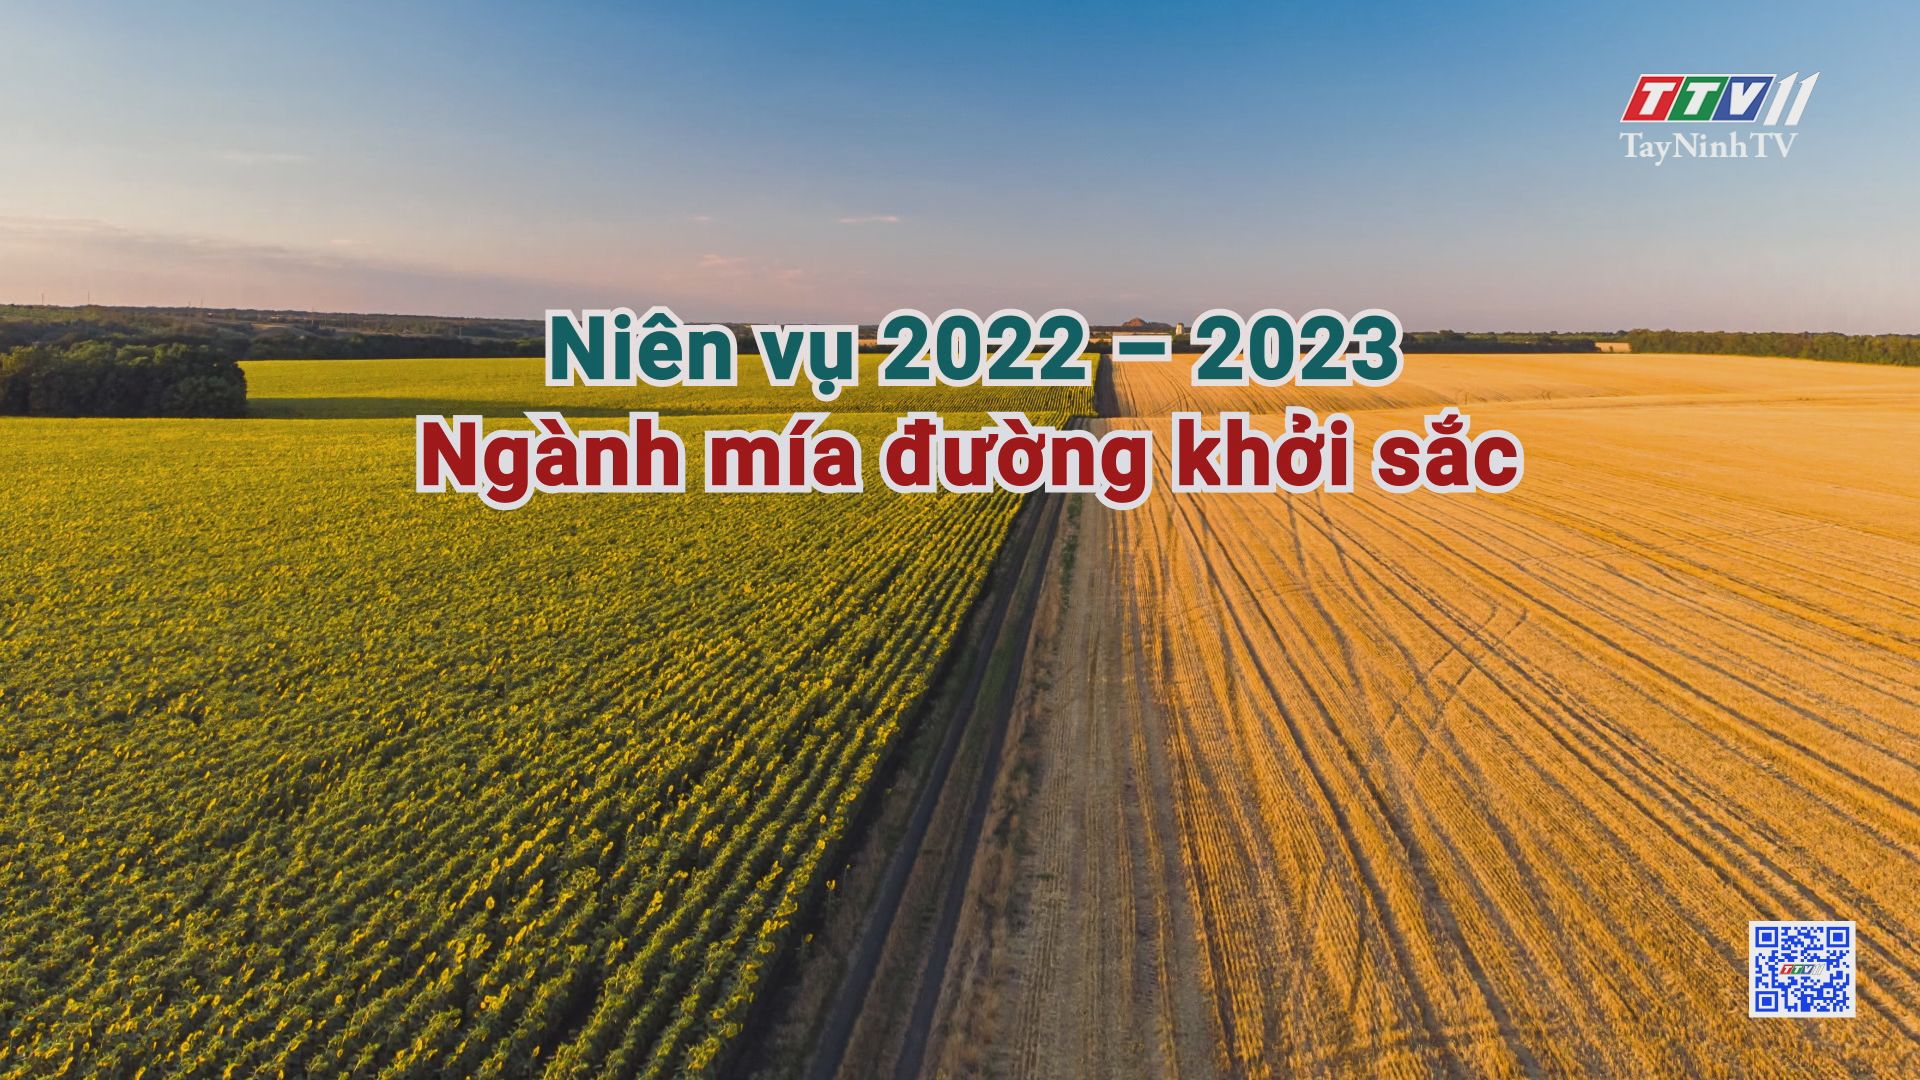 Niên vụ 2022 - 2023 - Ngành mía đường khởi sắc | CÂY MÍA VIỆT | TayNinhTV